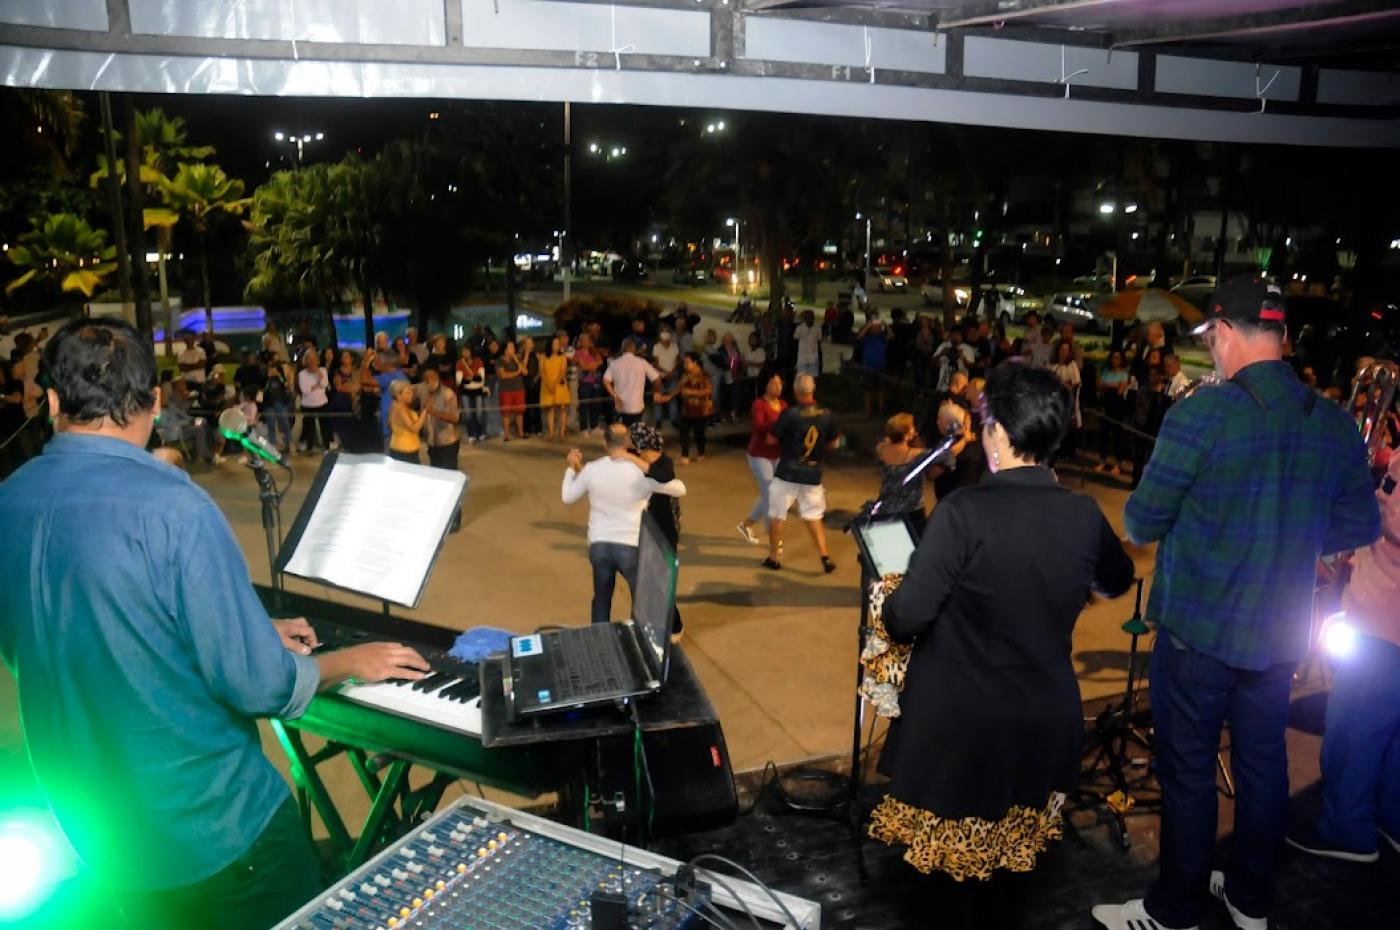 banda toca e pessoas dançando ao fundo #paratodosverem